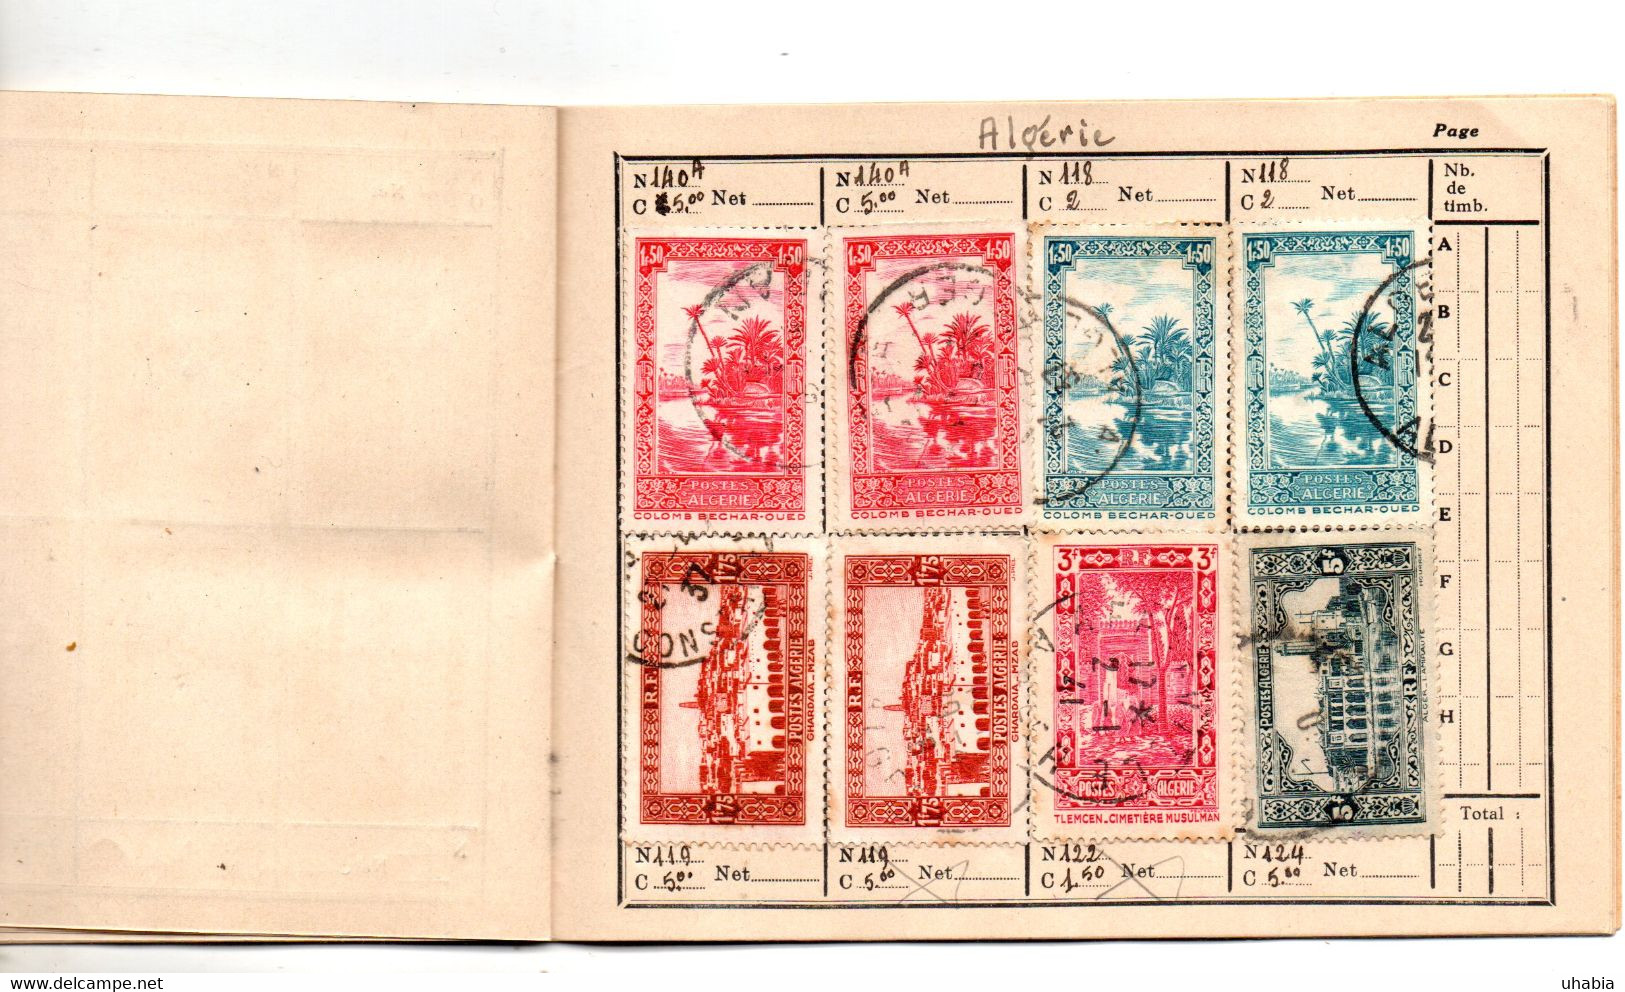 Grand Liban. Syrie. algerie. Carnet de liaison philatelique. 97 timbres voir description.